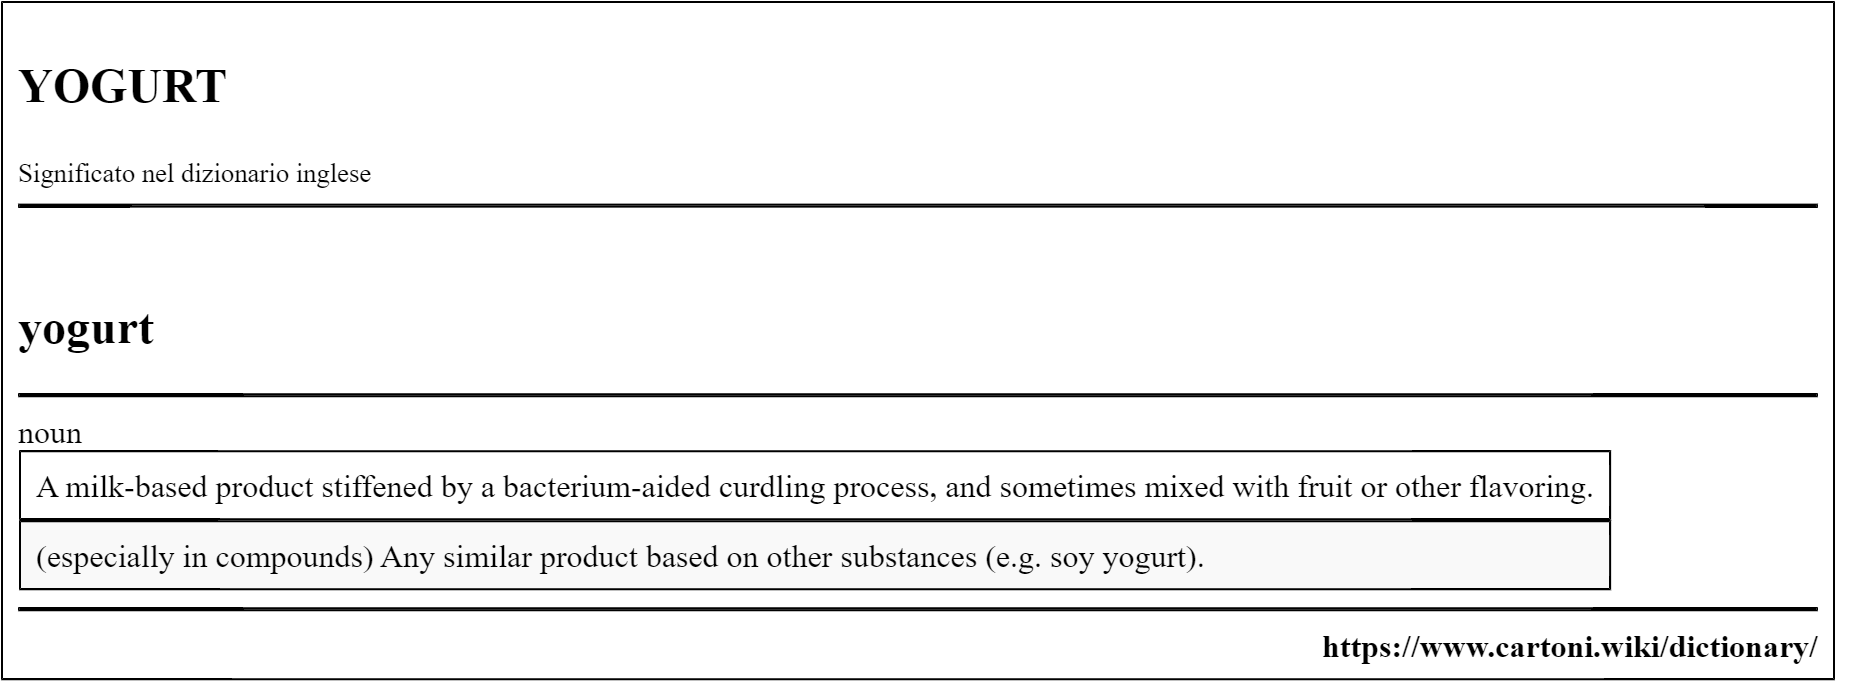 yogurt pronuncia e significato nel dizionario inglese